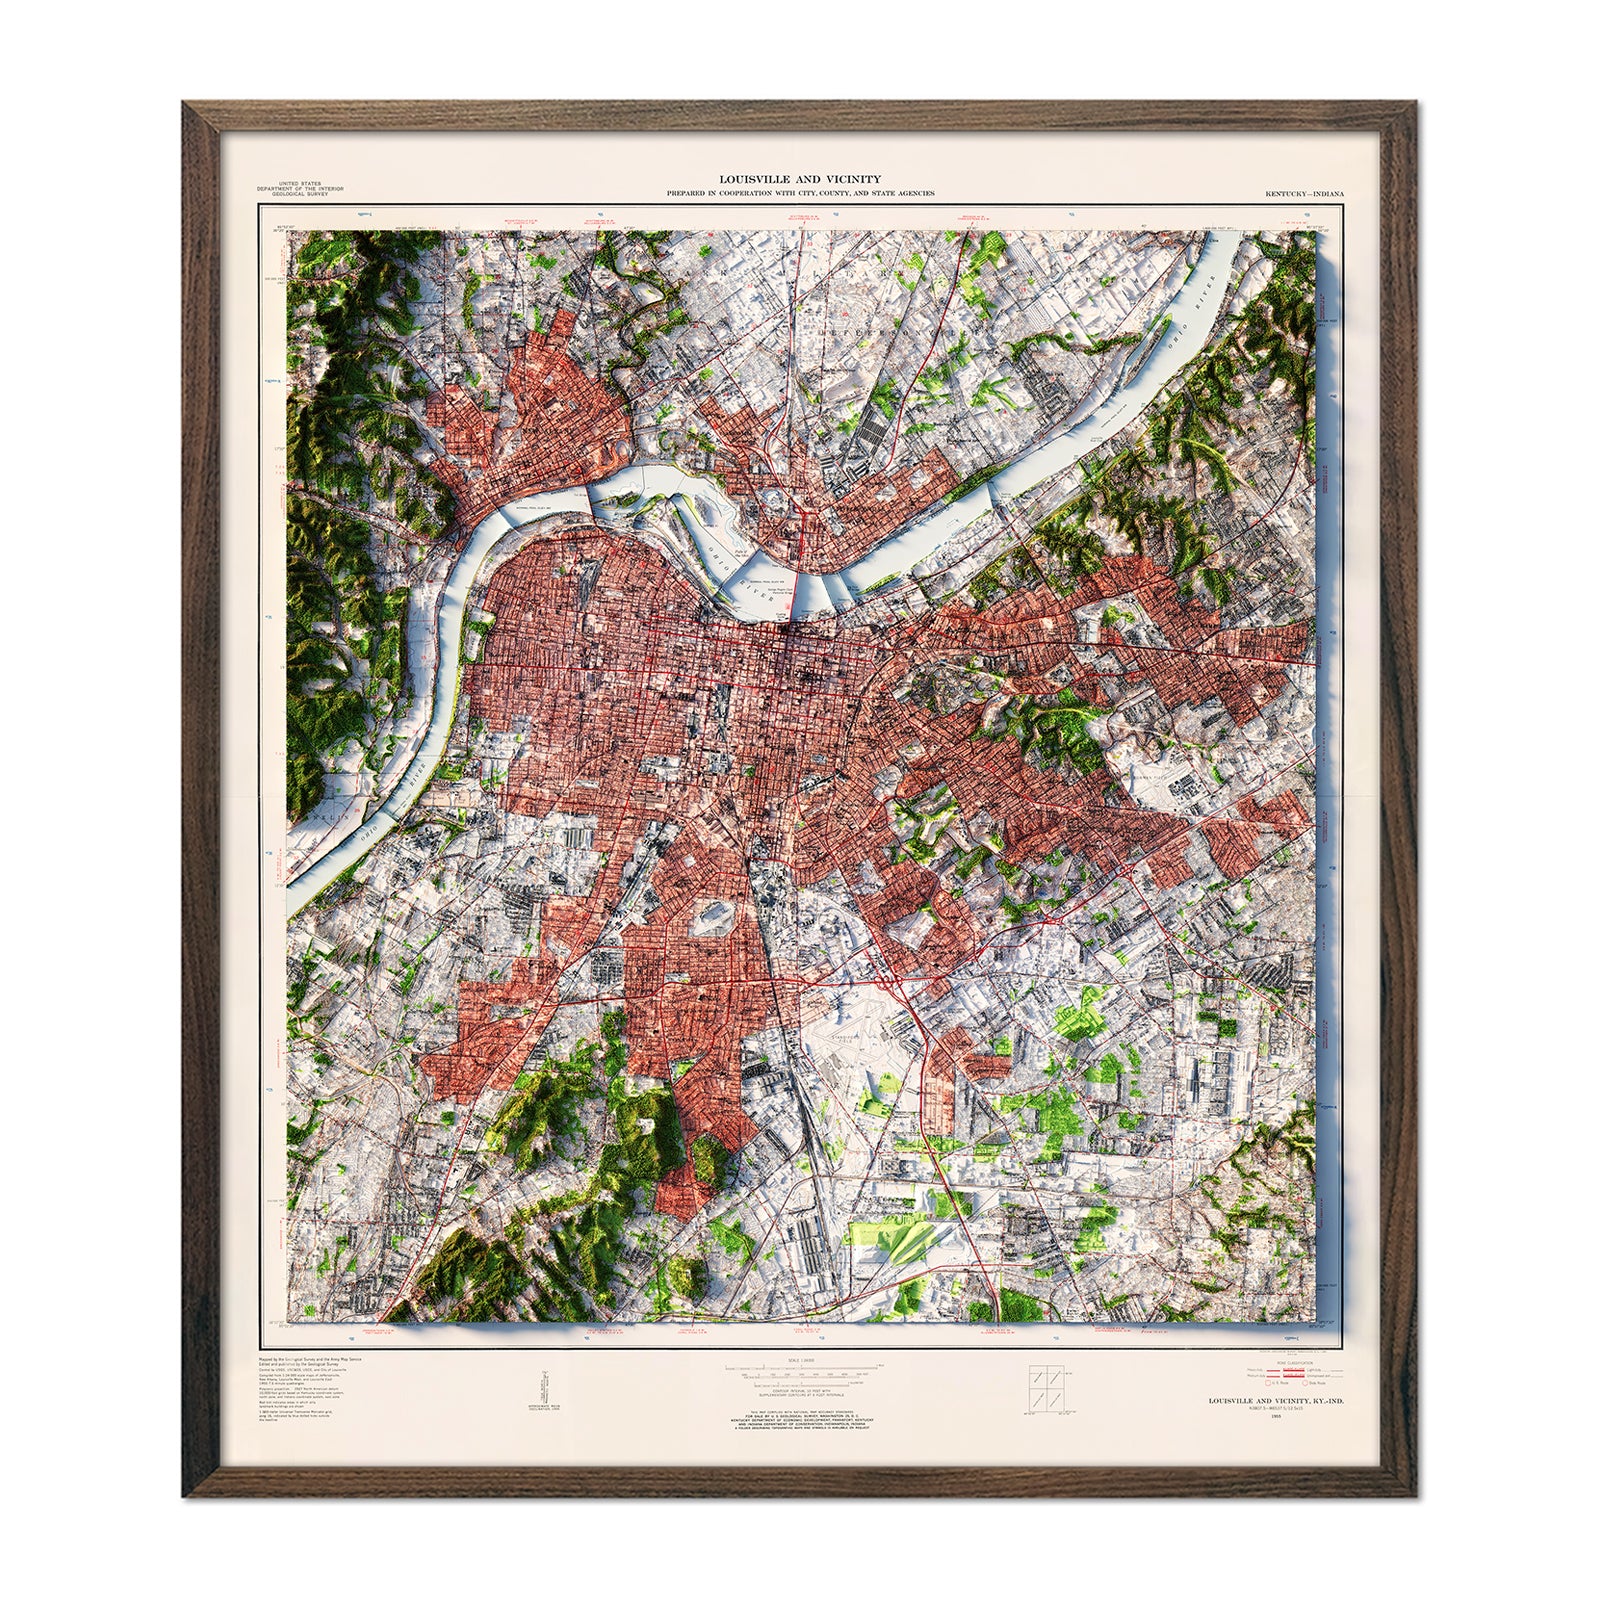 Louisville Kentucky City Map Art Print